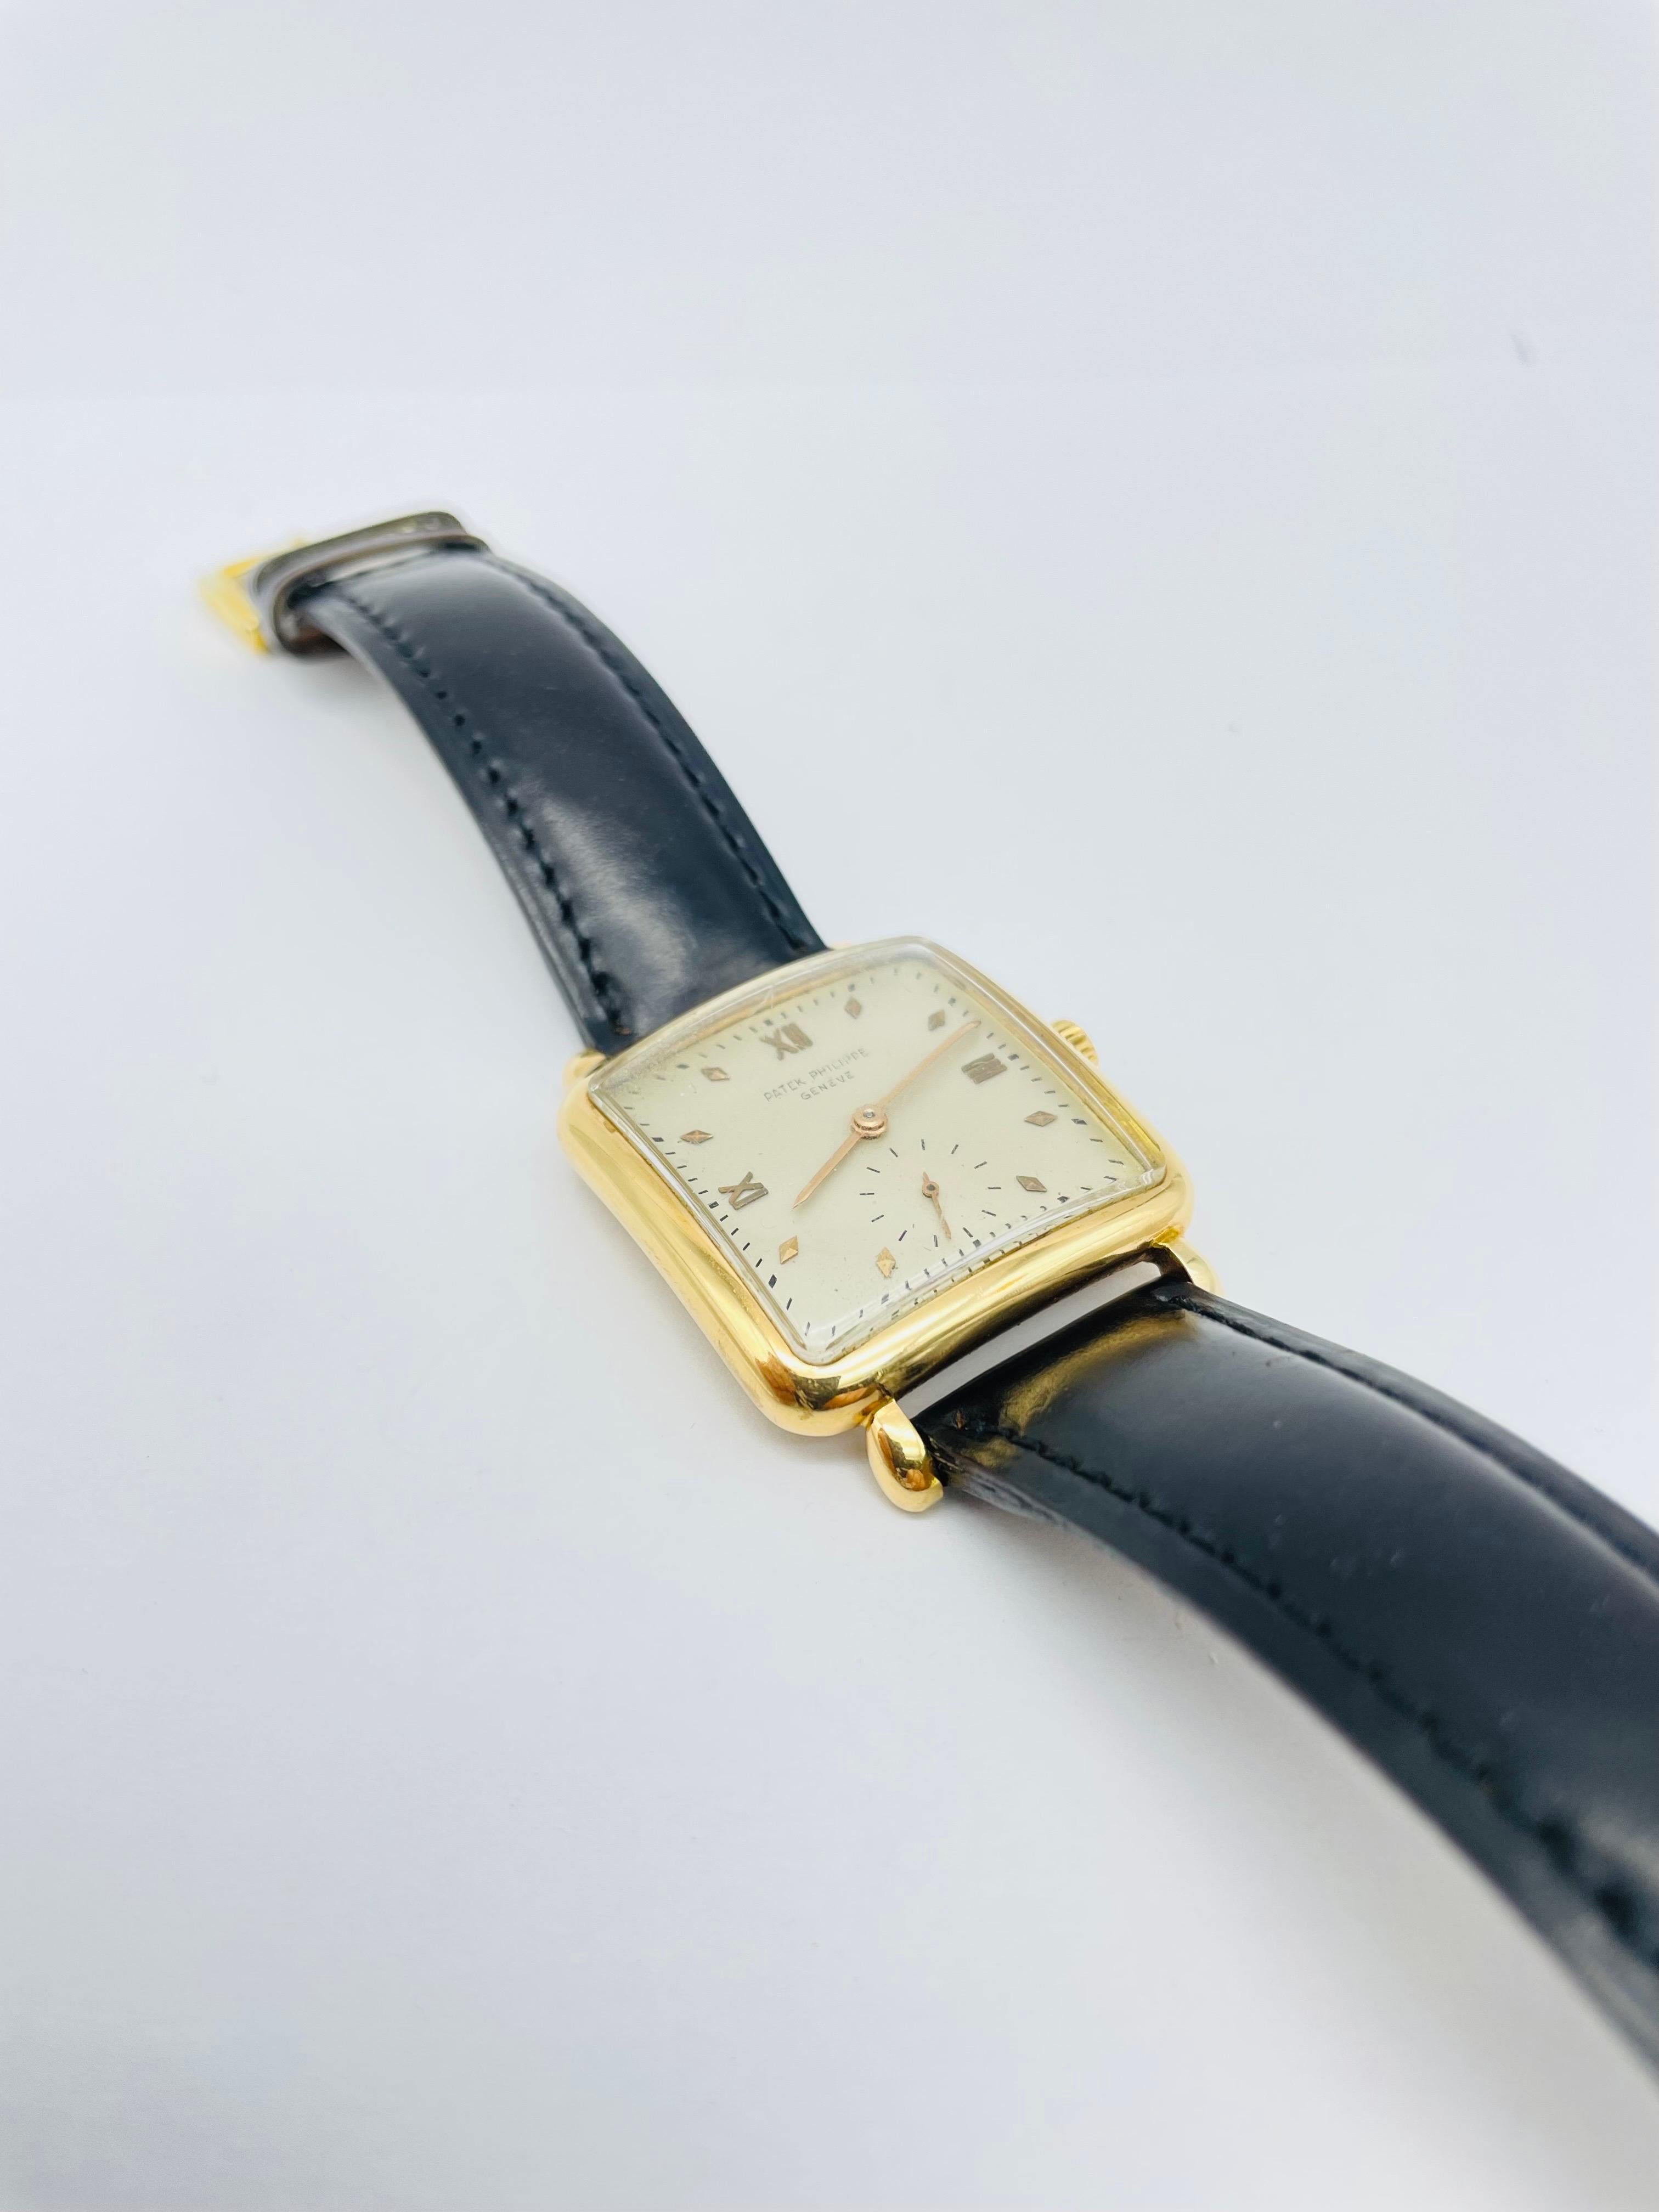 Admirez la majesté de la montre mécanique pour hommes Patek Philippe Rectangular Cushion 18K Yellow Gold 1950s Ref. 2492, un chef-d'œuvre d'ingénierie horlogère qui met en valeur les meilleurs éléments d'artisanat et de design qui font la renommée